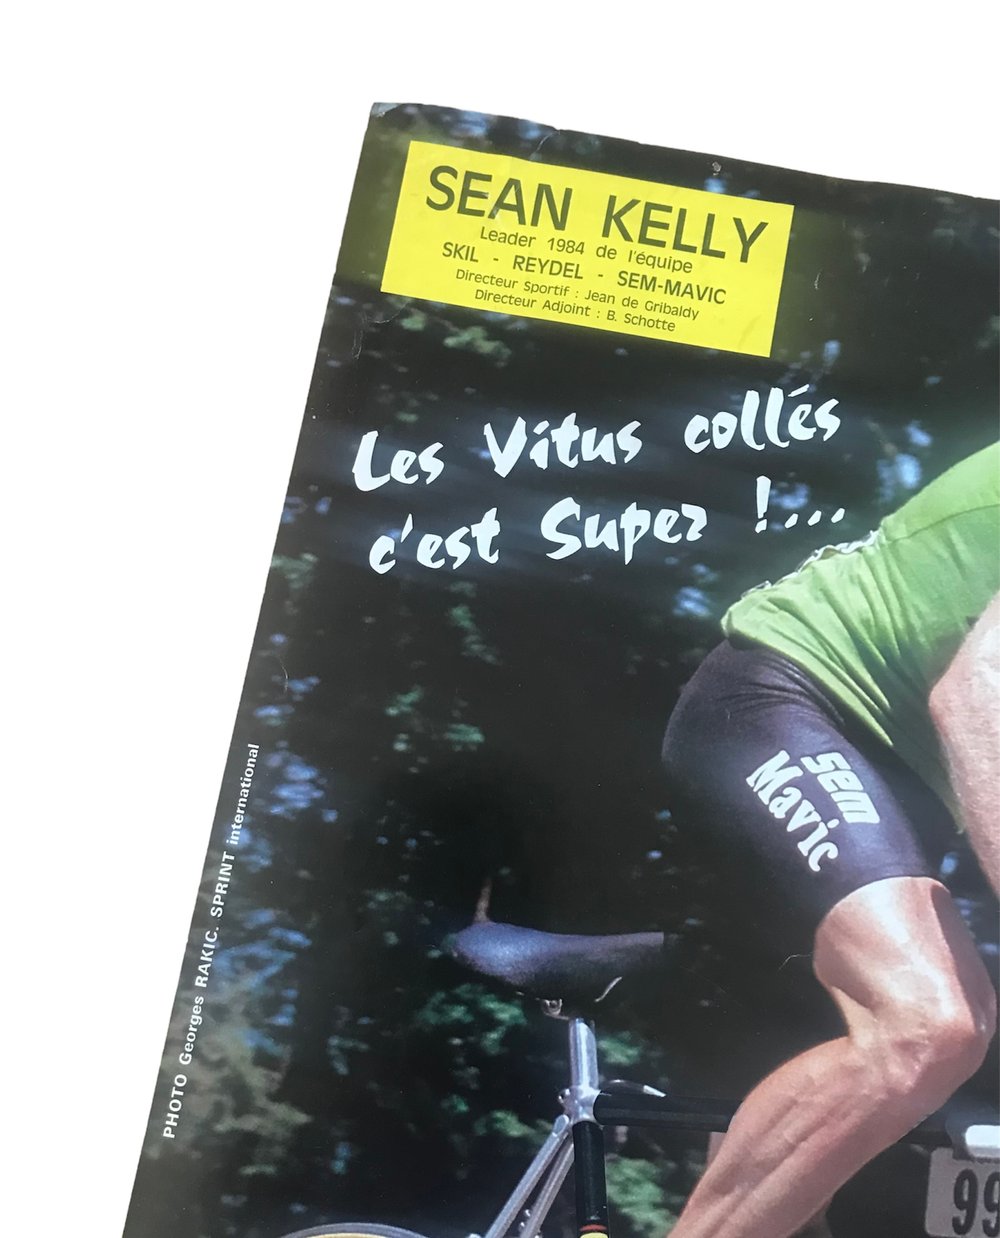 Rare advertising poster of Vitus brand ambassador Sean King Kelly